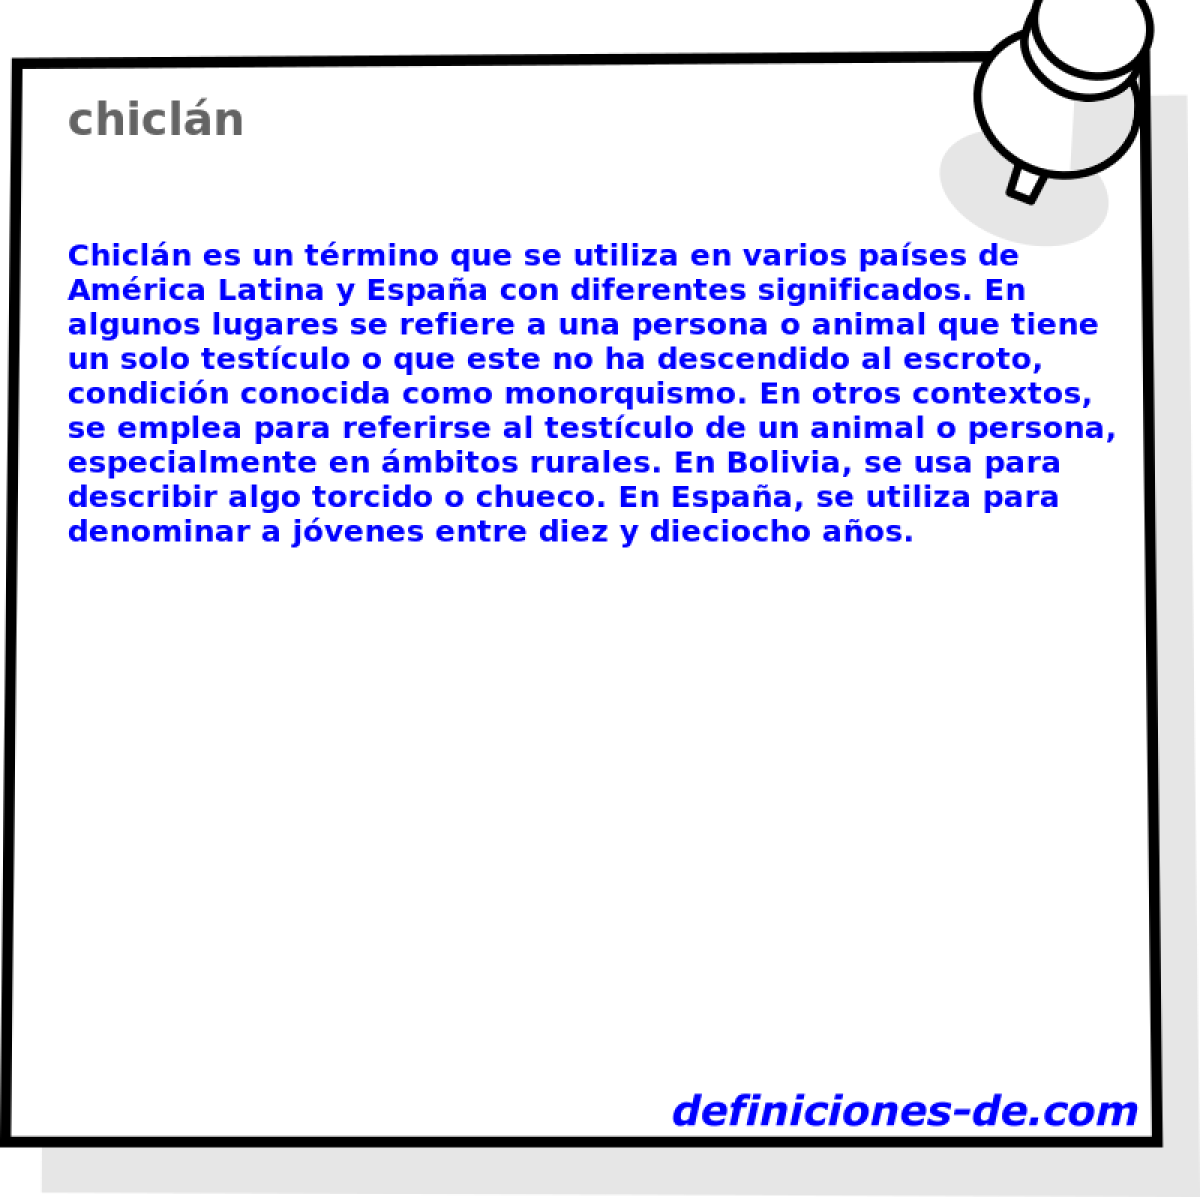 chicln 